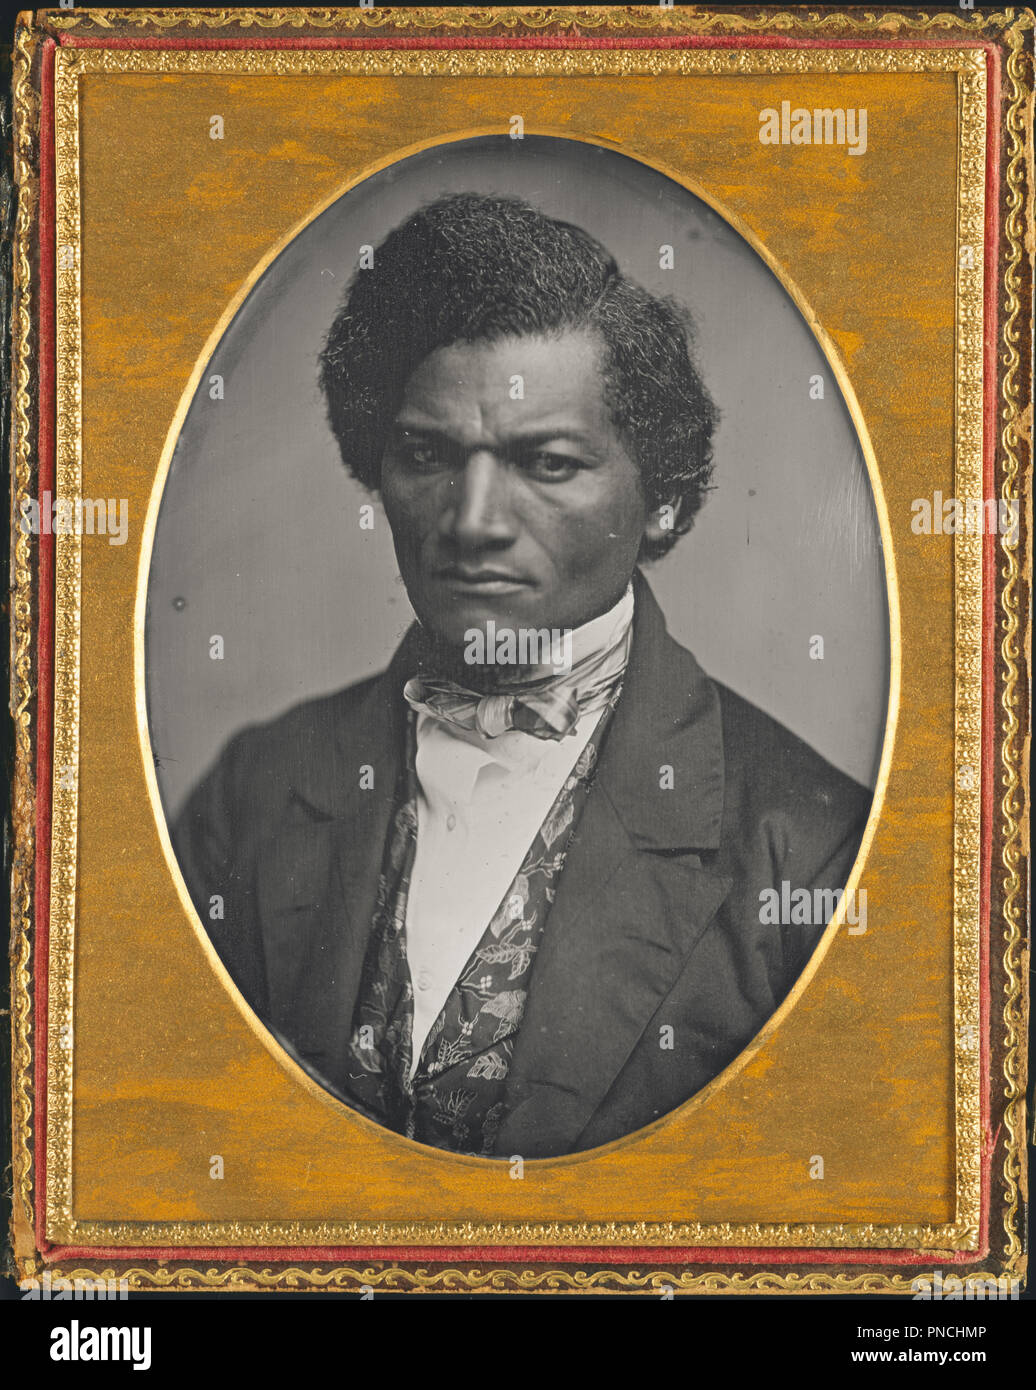 Frederick Douglass. Date/Période : 1847/52. Photographie. Daguerréotype daguerréotype. Hauteur : 140 mm (5.51 in) ; Largeur : 106 mm (4,17 in). Auteur : Samuel J. Miller. Banque D'Images